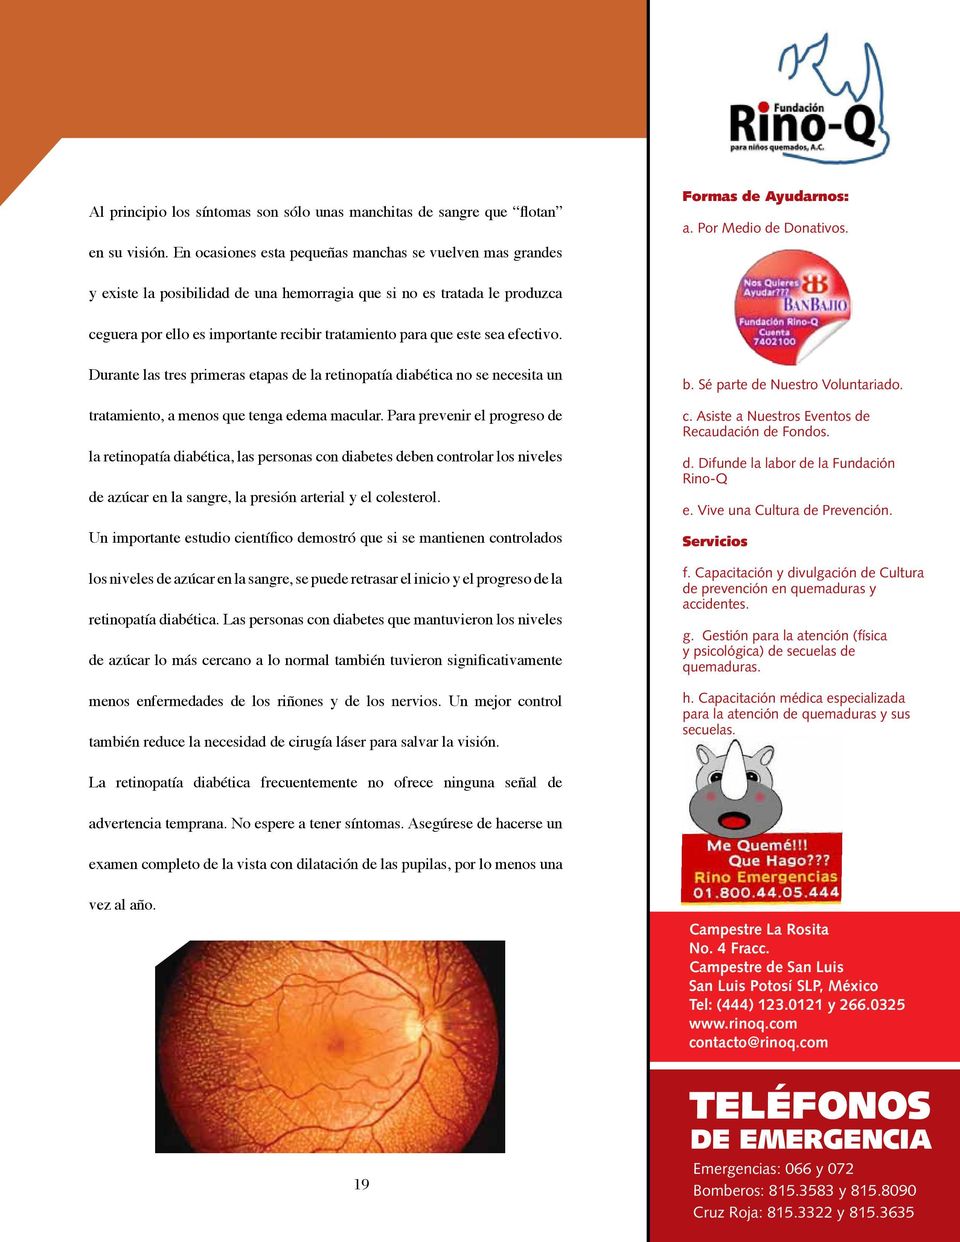 Durante las tres primeras etapas de la retinopatía diabética no se necesita un tratamiento, a menos que tenga edema macular.